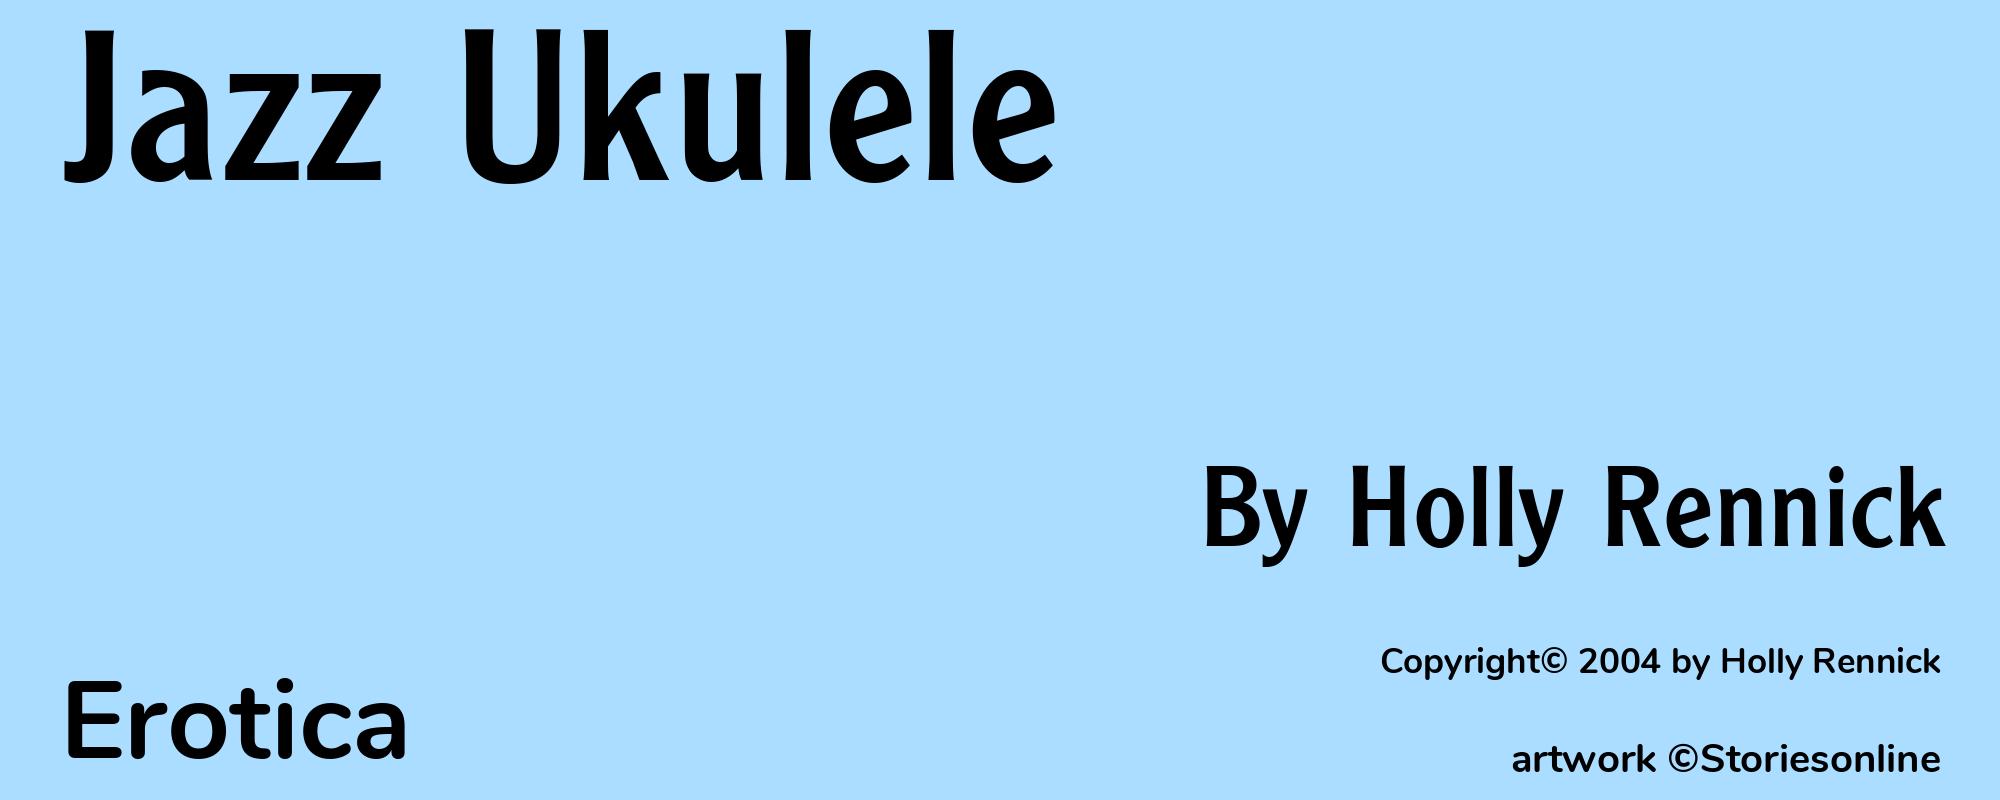 Jazz Ukulele - Cover